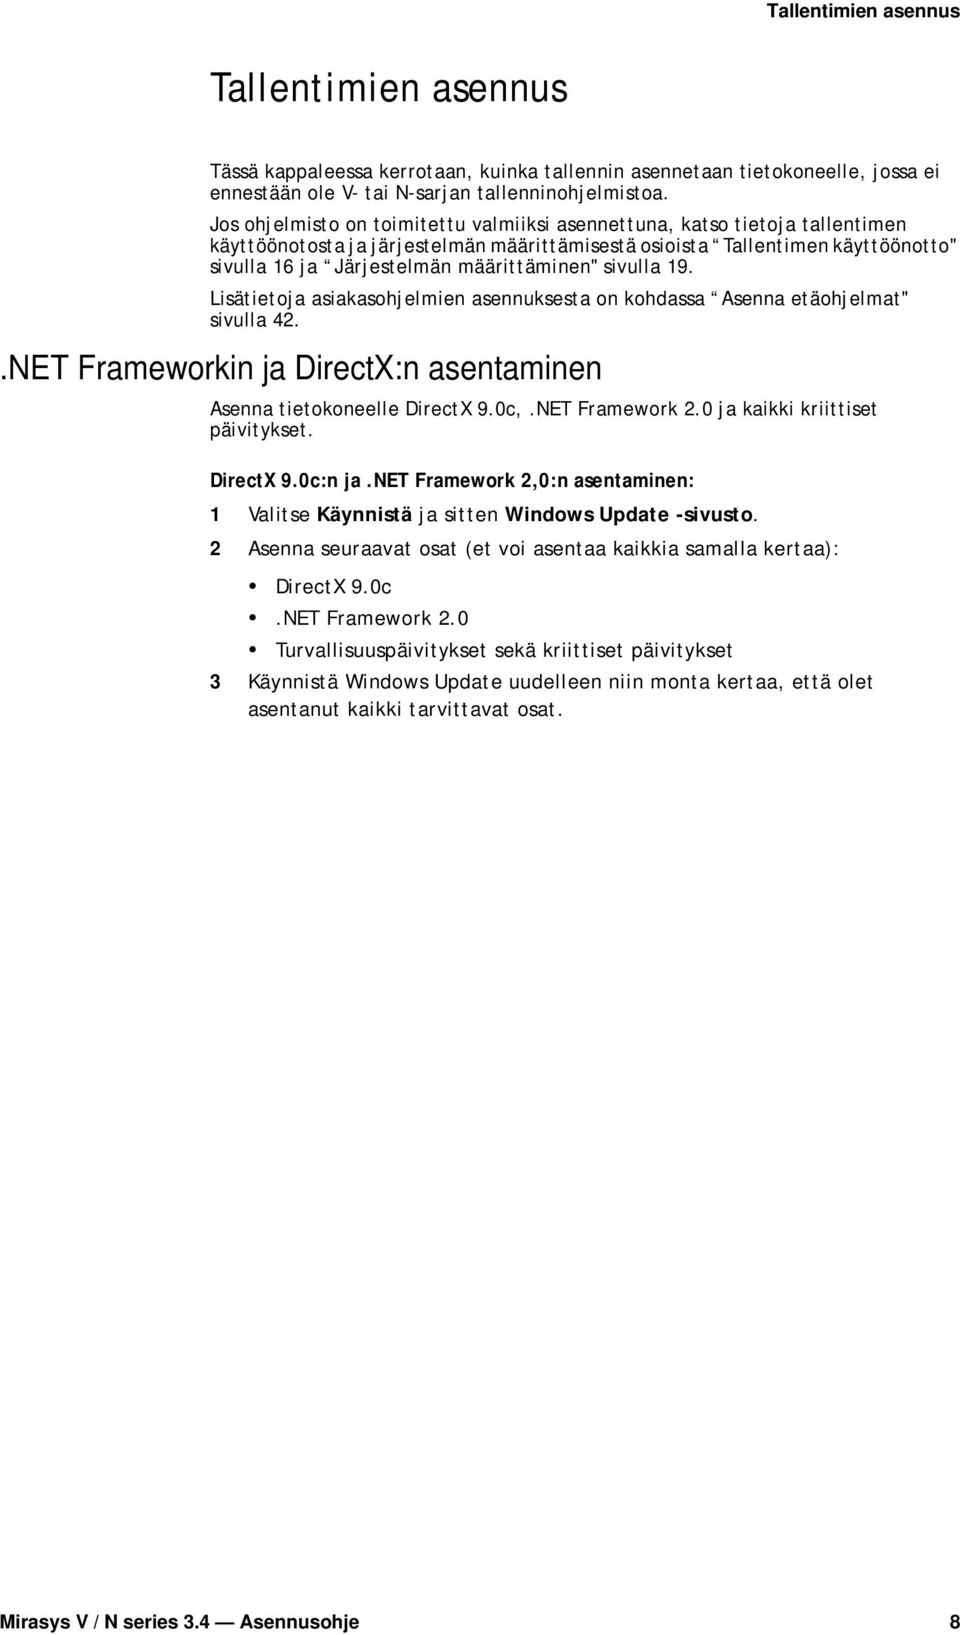 määrittäminen" sivulla 19. Lisätietoja asiakasohjelmien asennuksesta on kohdassa Asenna etäohjelmat" sivulla 42..NET Frameworkin ja DirectX:n asentaminen Asenna tietokoneelle DirectX 9.0c,.